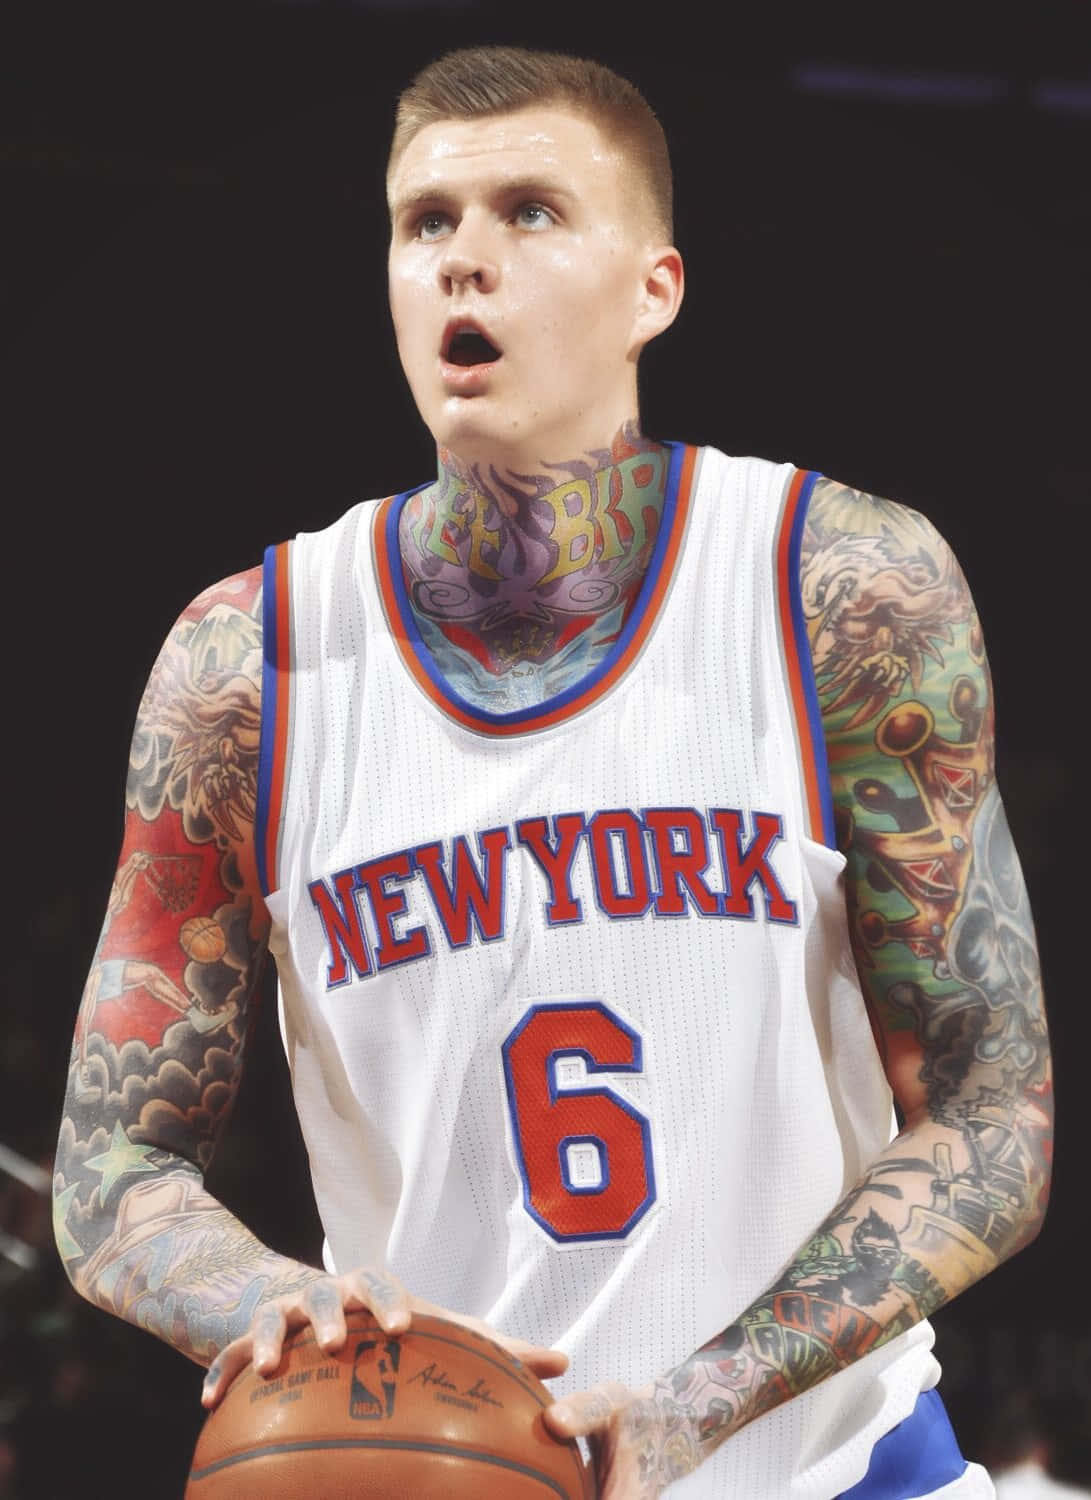 Basketball Player Tattoos New York Jersey Wallpaper